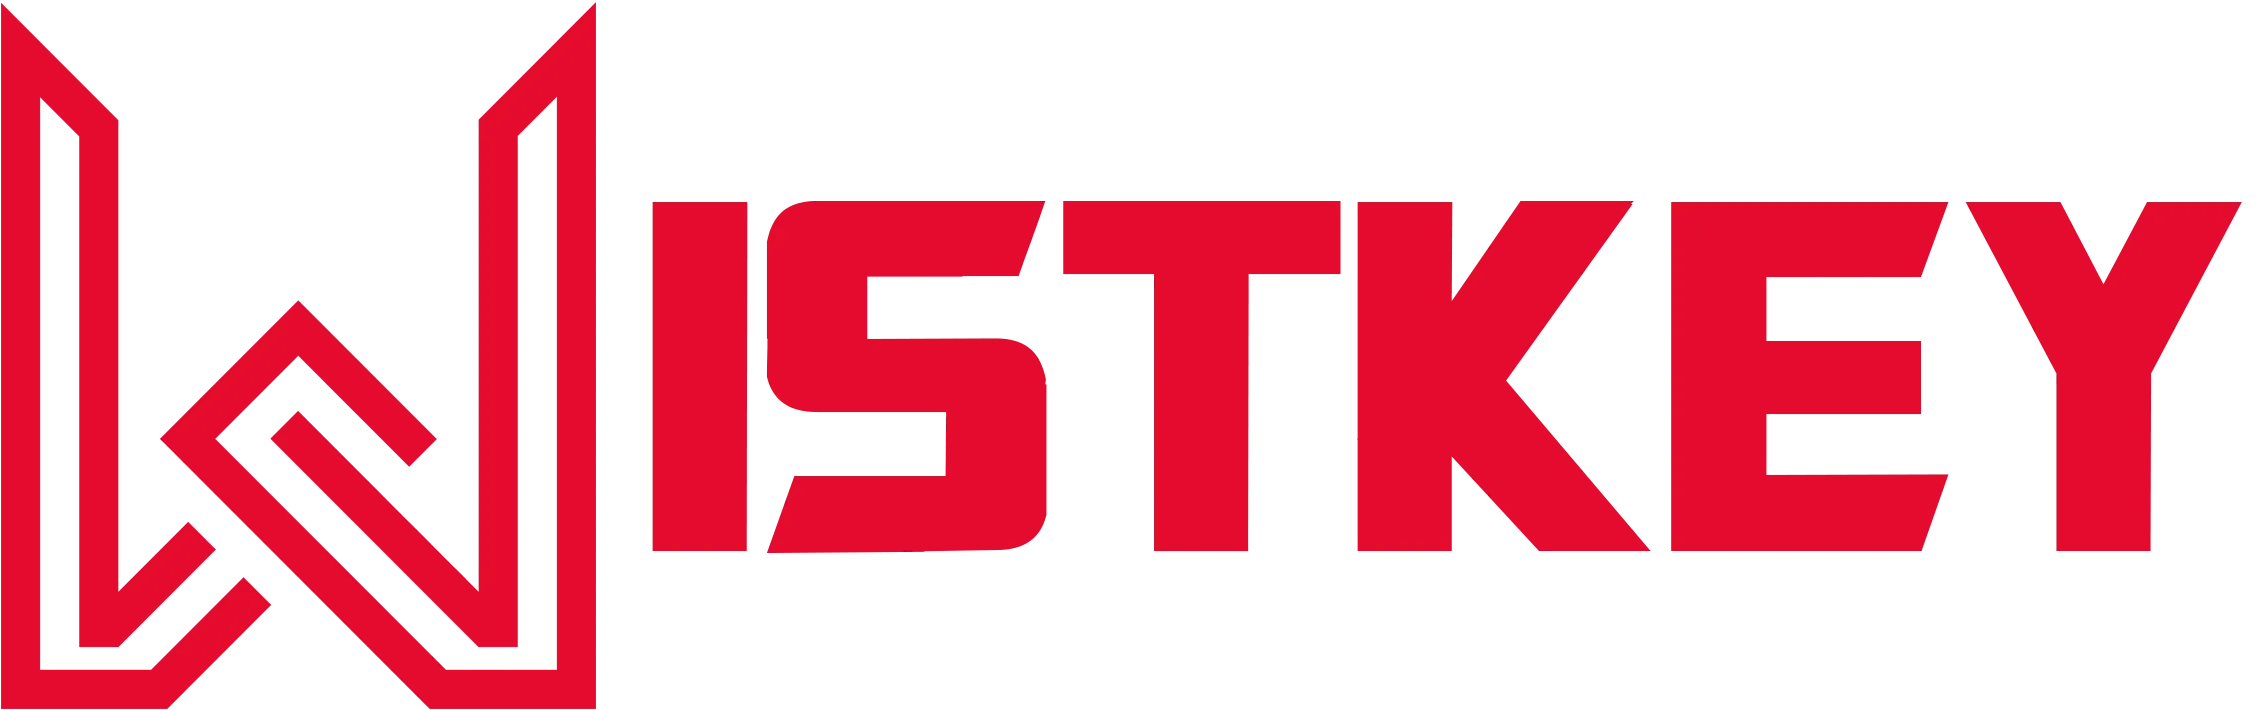 Wistkey Limited Logo